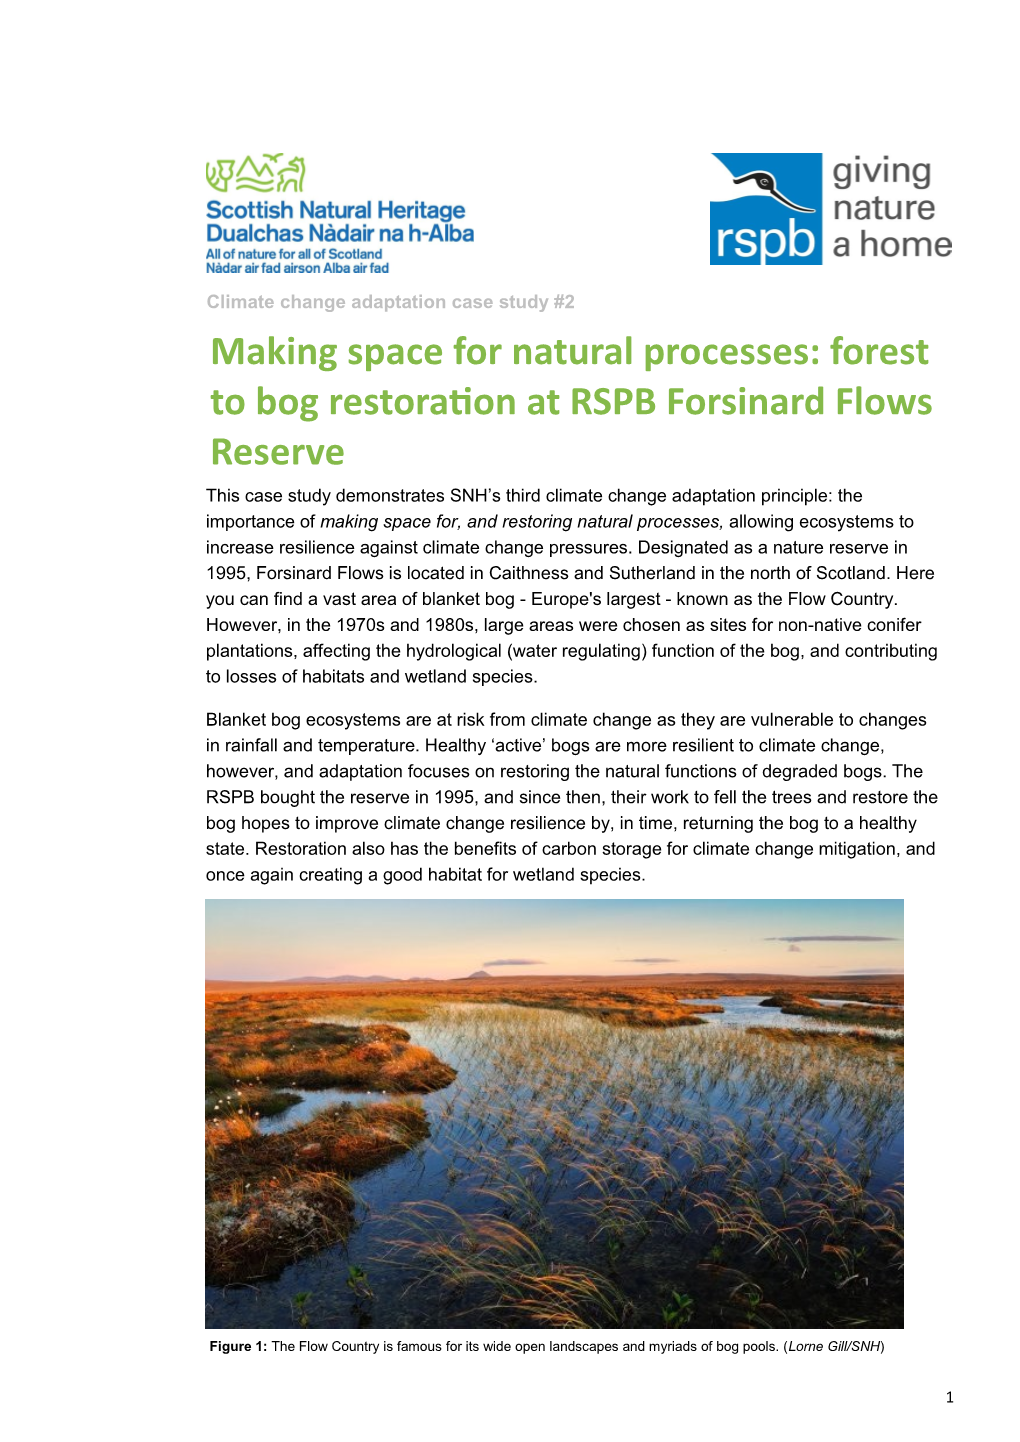 Forest to Bog Restoration at RSPB Forsinard Flows Reserve